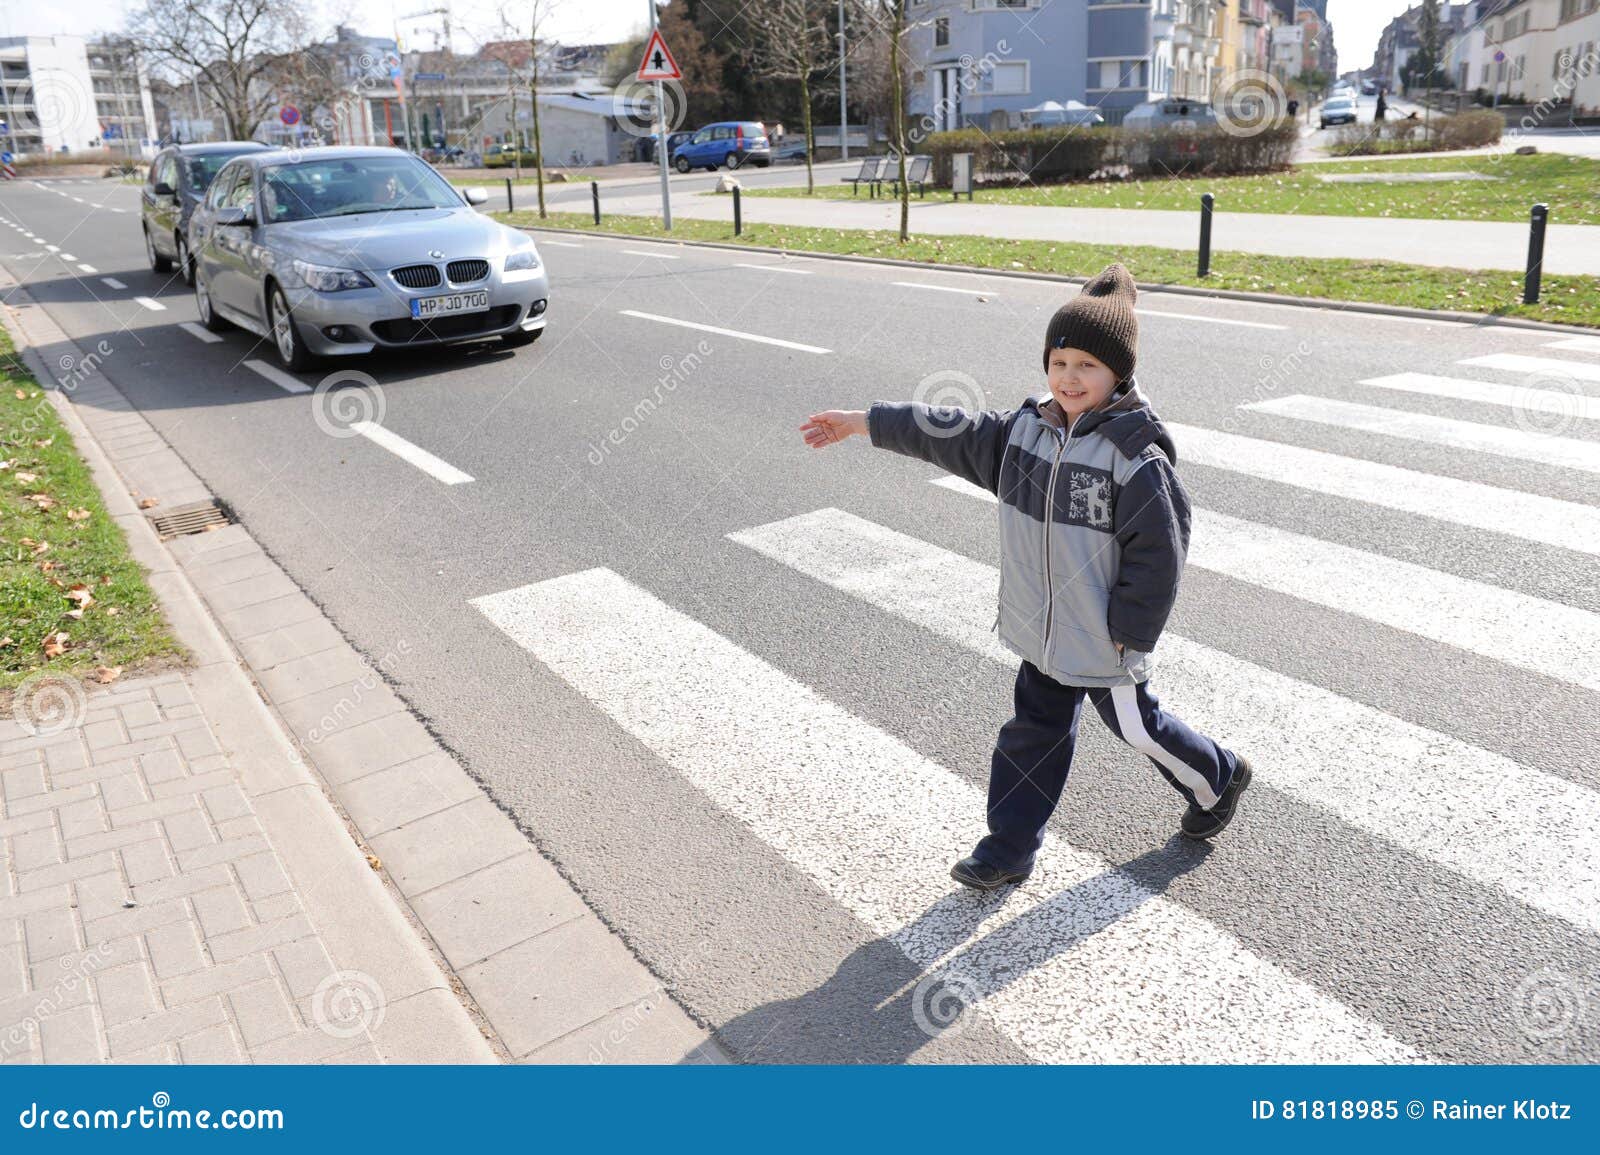 Сыновья пешеходов кратко. Дети пешеходы. Пешеходный переход для детей. Дети переходят дорогу. Пешеходы и машины.